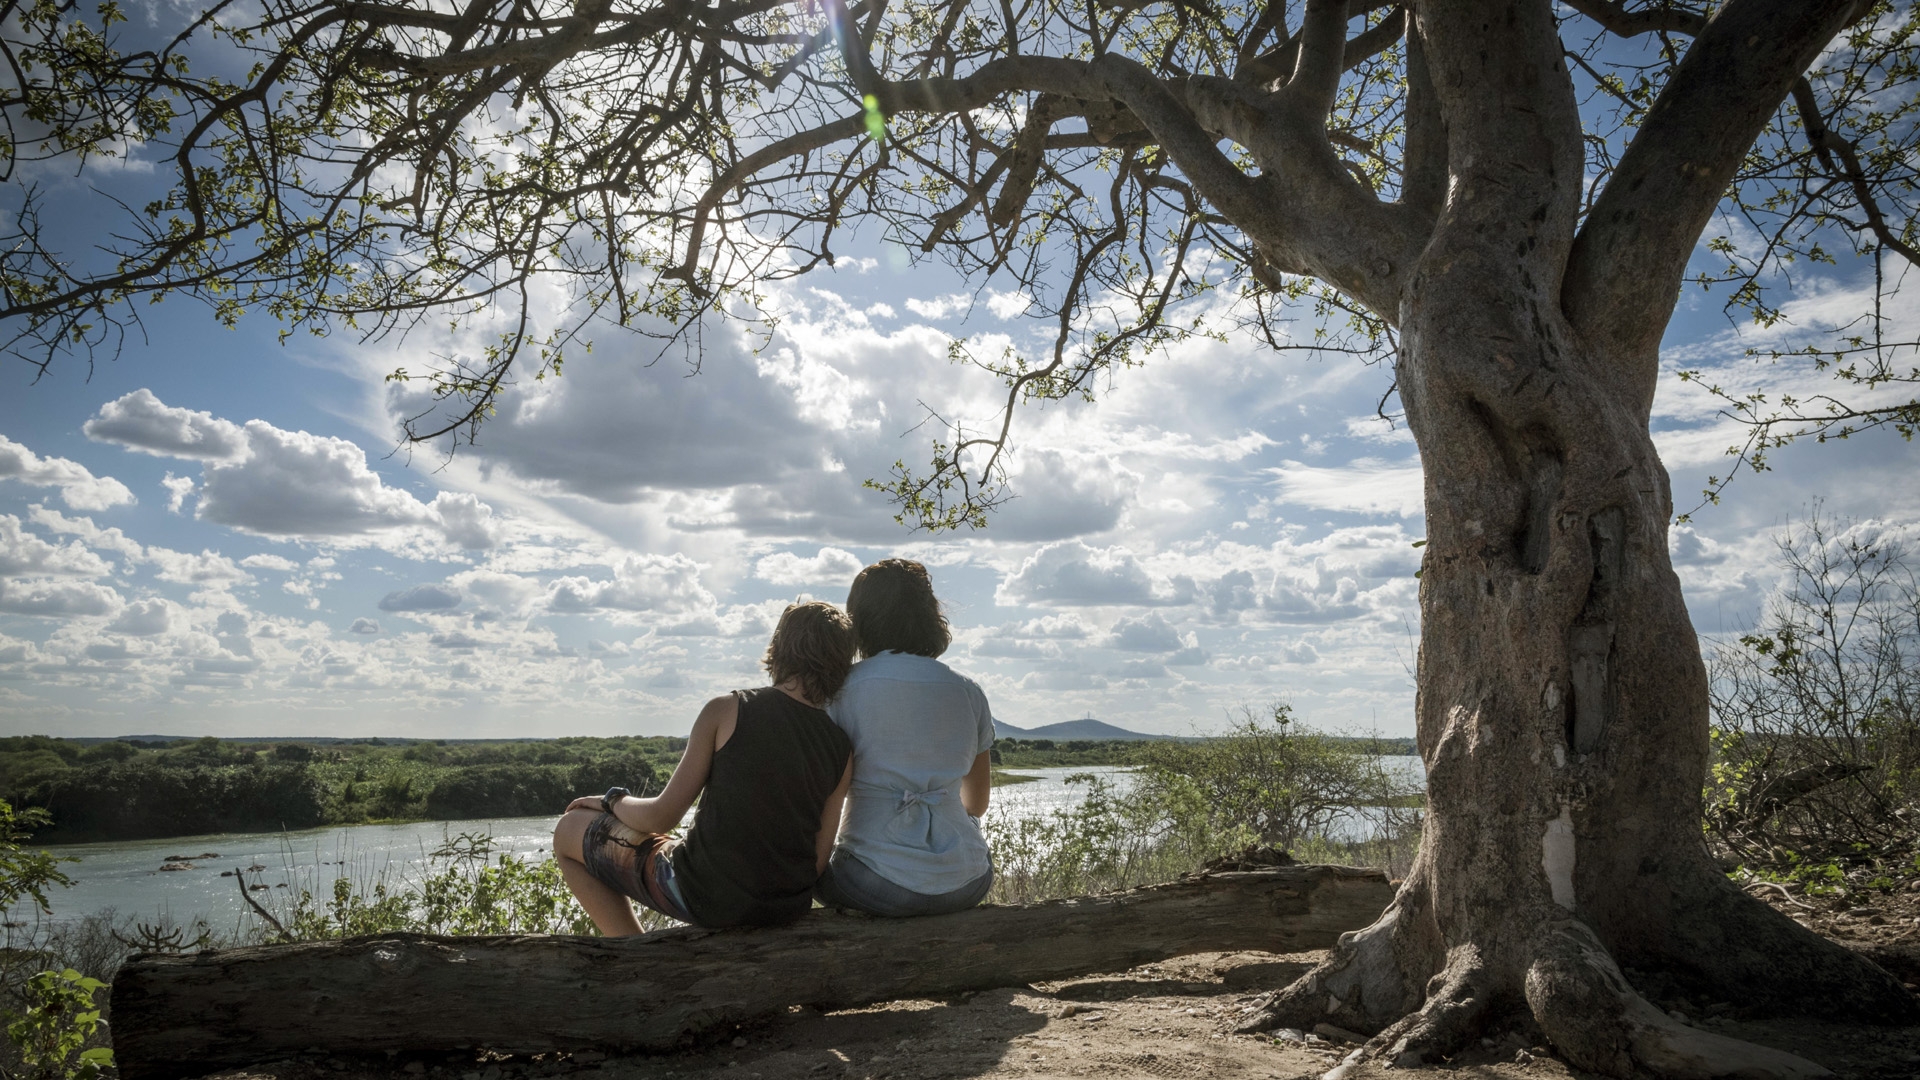 Foto de Acqua Movie. Alessandra Negrini e Antonio Haddad estão sentados no tronco de uma árvore, de costas para a foto. Eles olham na direção de um rio, o céu está bem iluminada e azul com nuvens. Ao lado direito, há uma grande árvore.